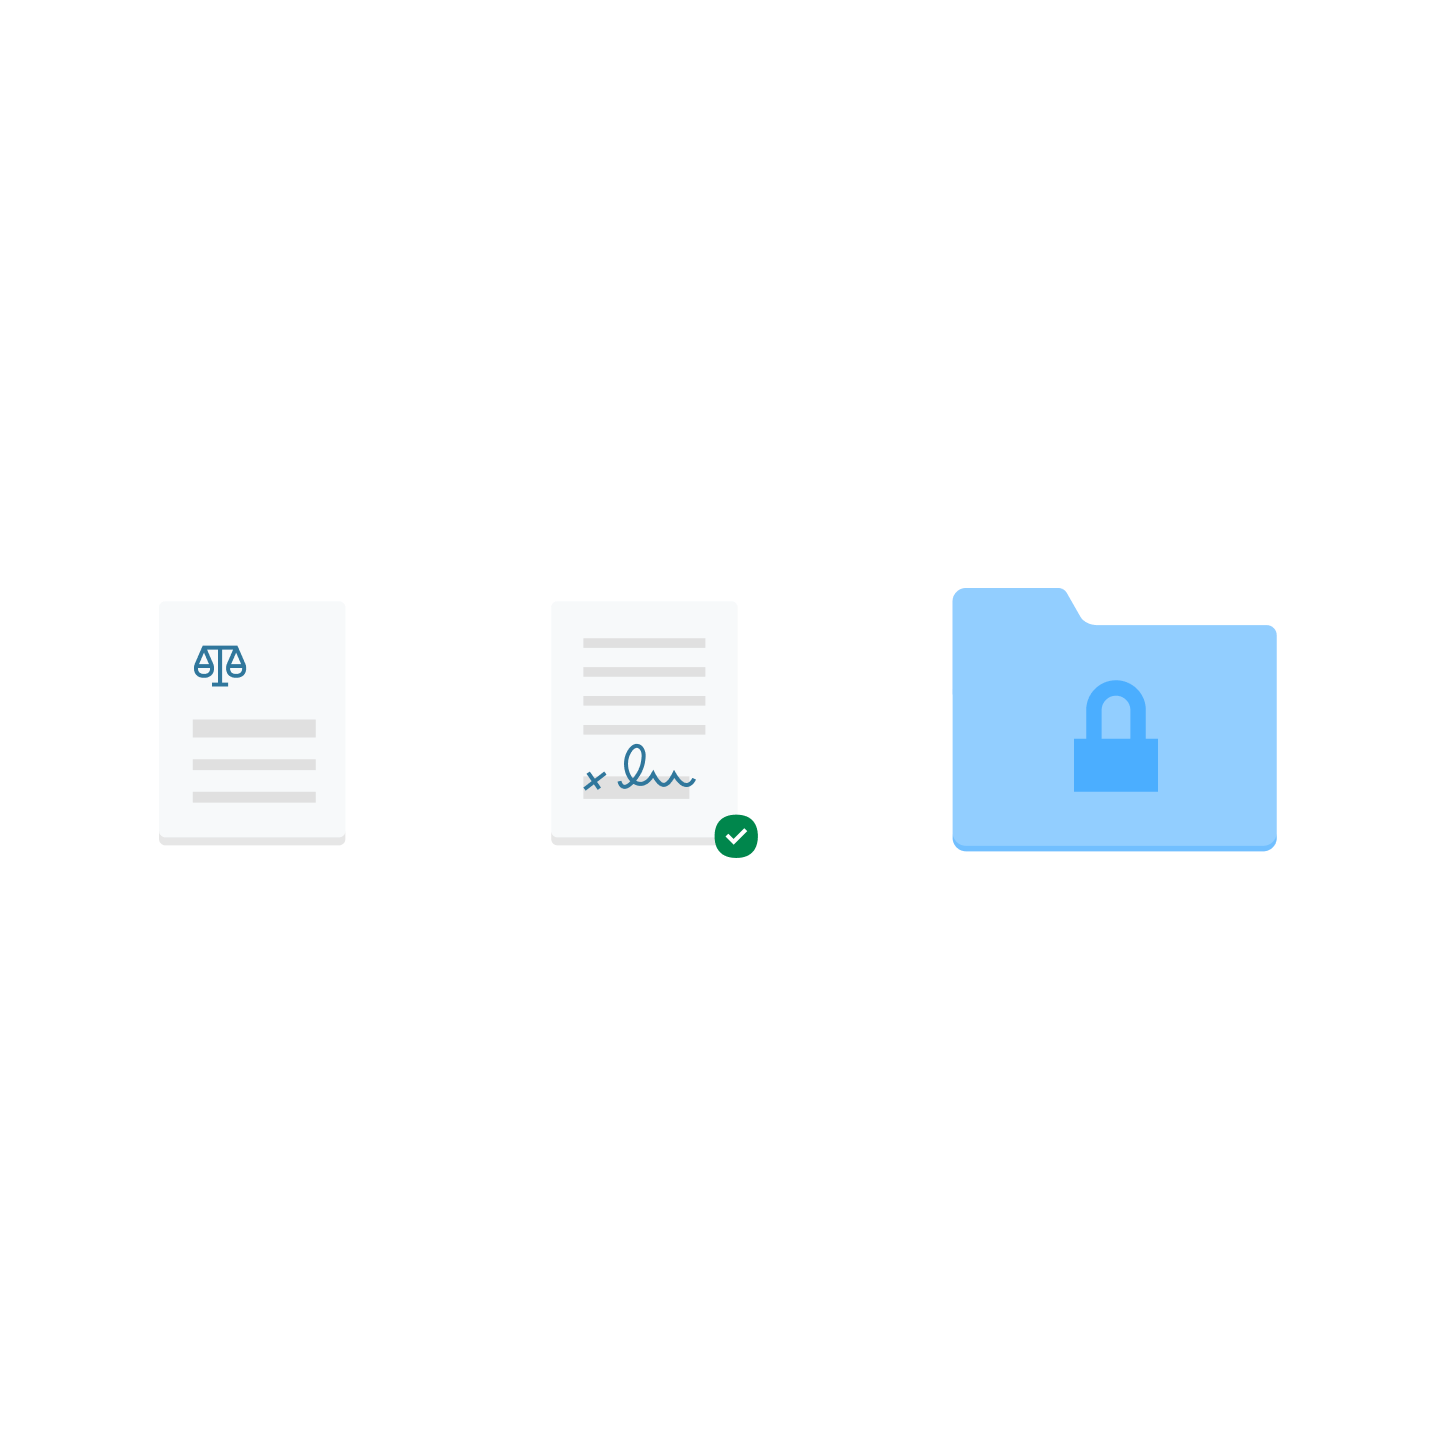 Два значка документа и значок синей папки с файлами с изображением замка